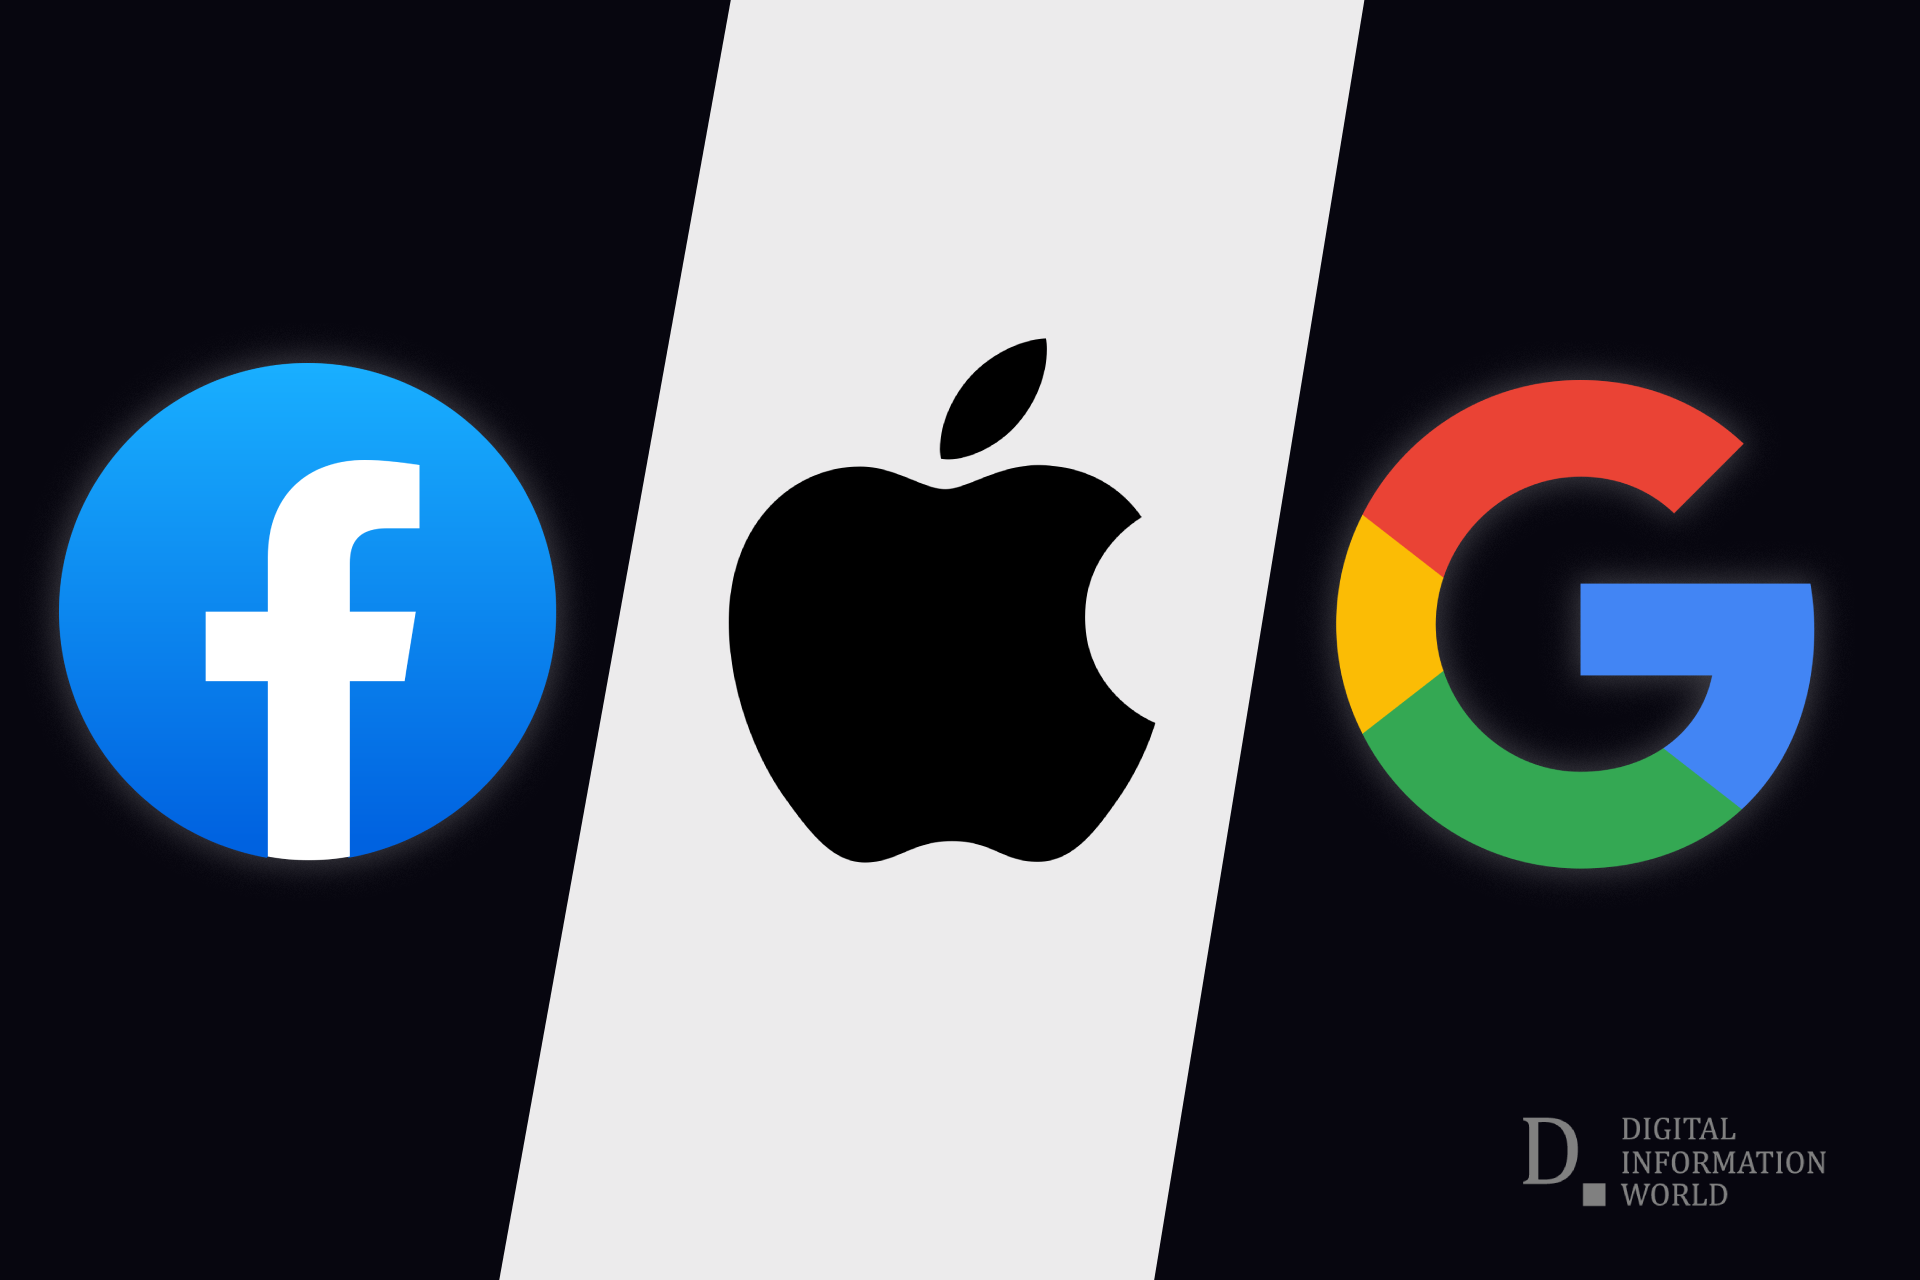 mặc dù mối quan hệ của Apple với người tiêu dùng không phải do quảng cáo, nhưng nhà sản xuất iPhone - giống như nhiều công ty công nghệ khác - đang trở thành một mạng lưới quảng cáo.